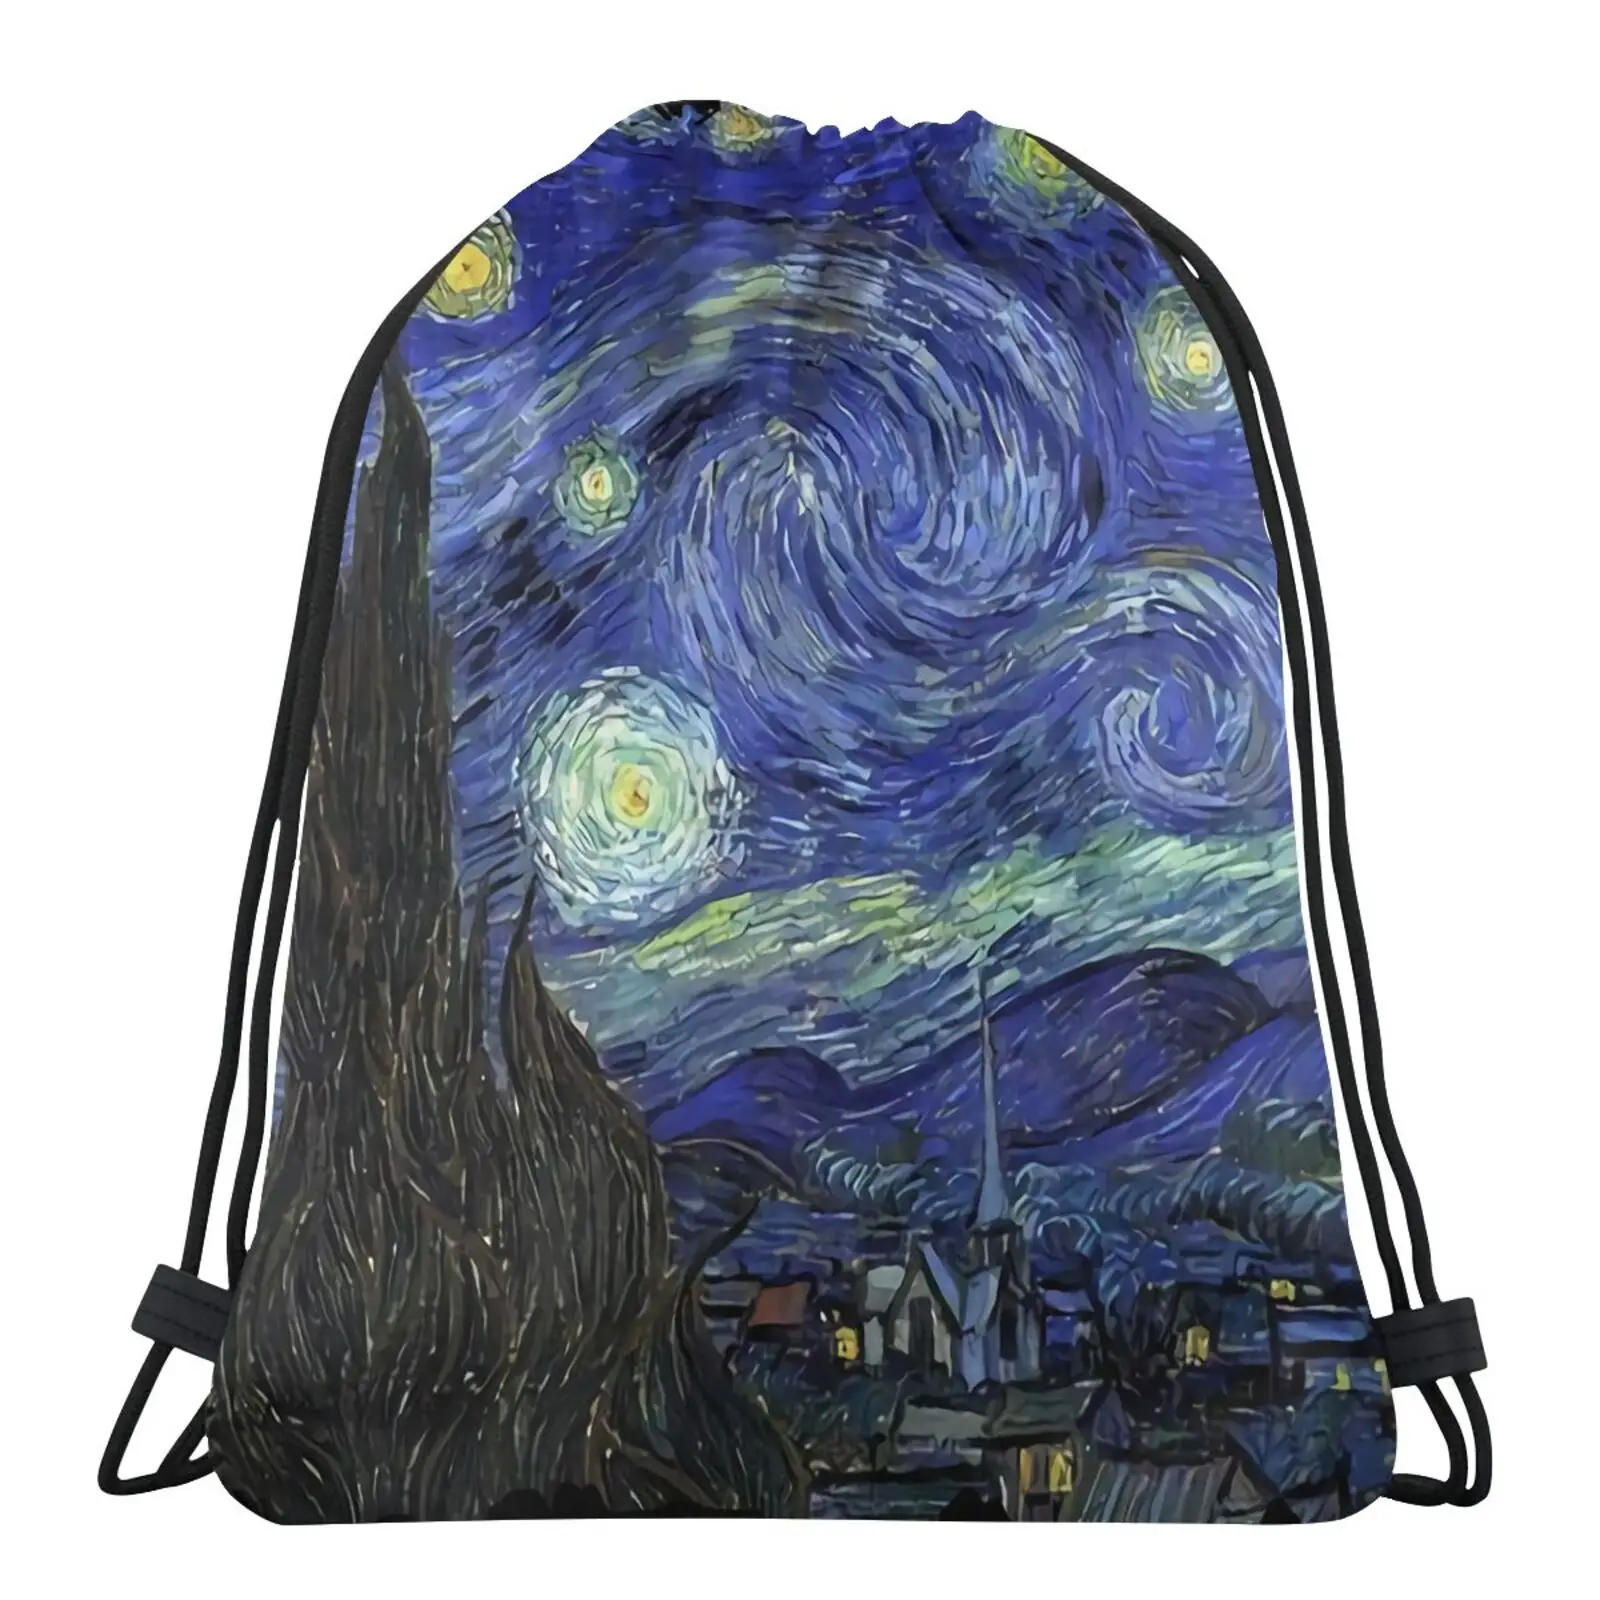 

Мужской рюкзак «Звездная ночь» Винсента Ван Гога, рюкзак для обуви, рюкзаки, сумки на шнурке, сумки на шнурке для девочек, женская сумка